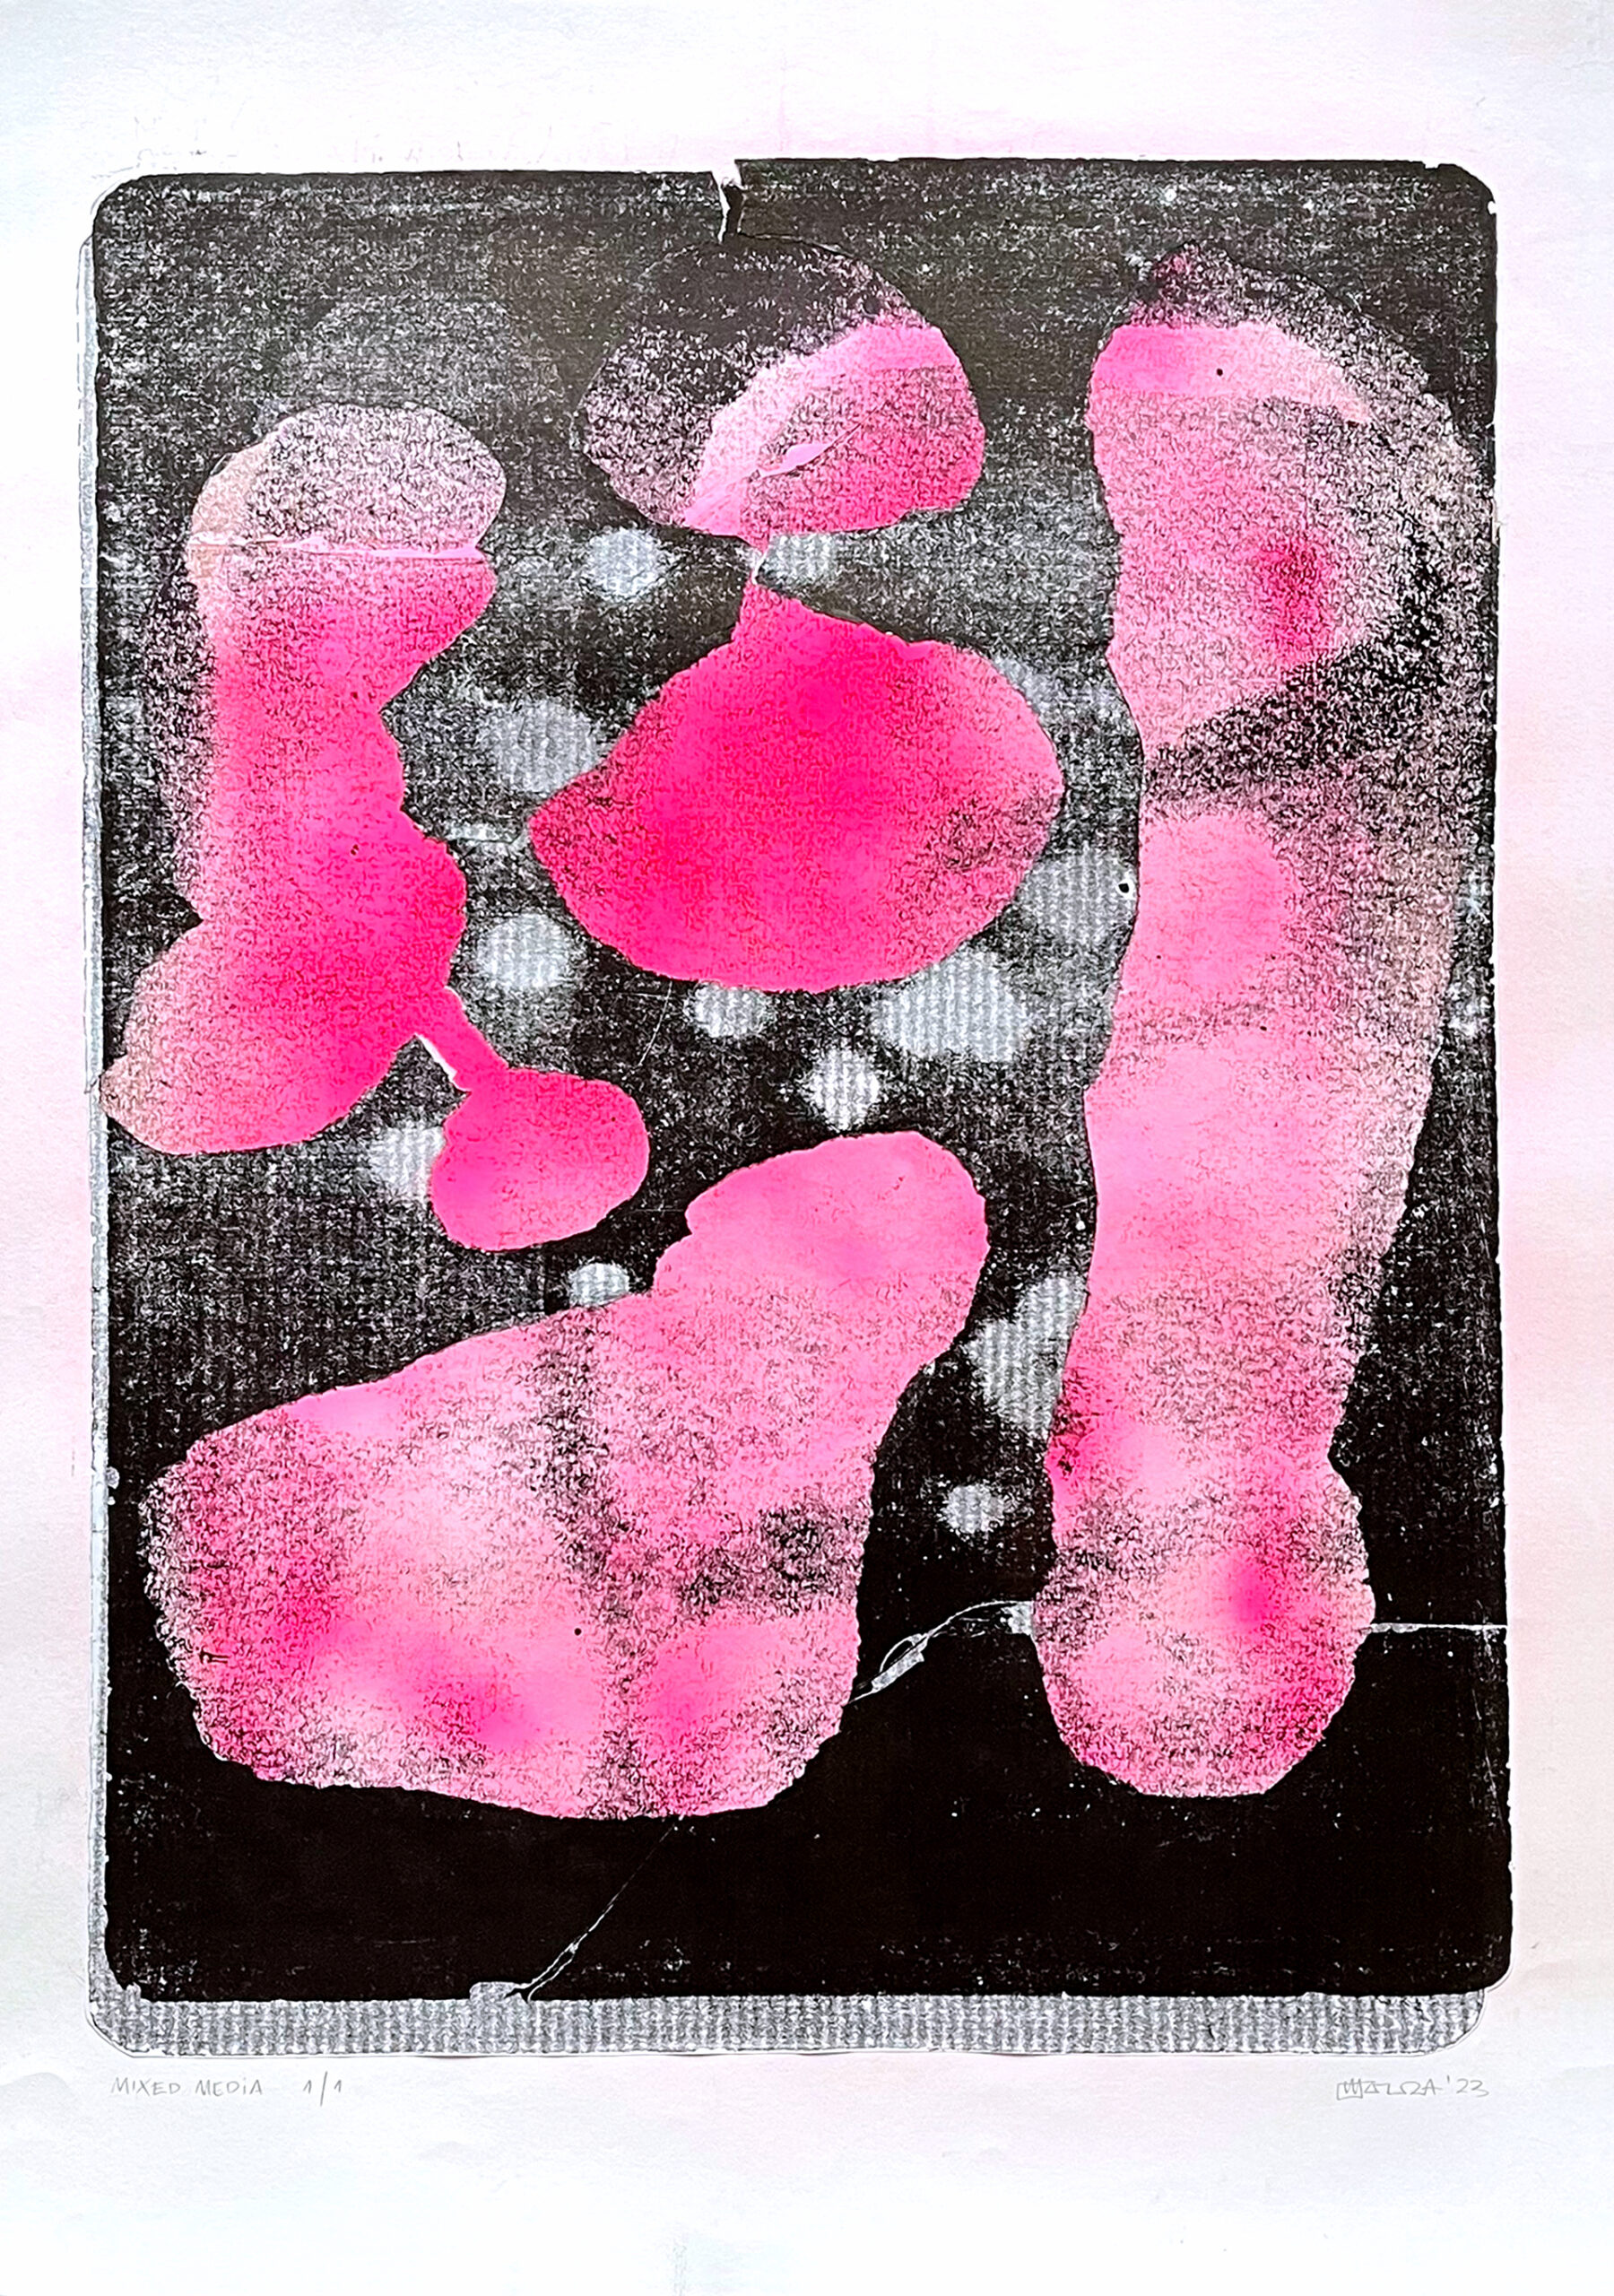 Praca przedstawia abstrakcję z czarnym prostokątem wypełnionym różowymi plamami